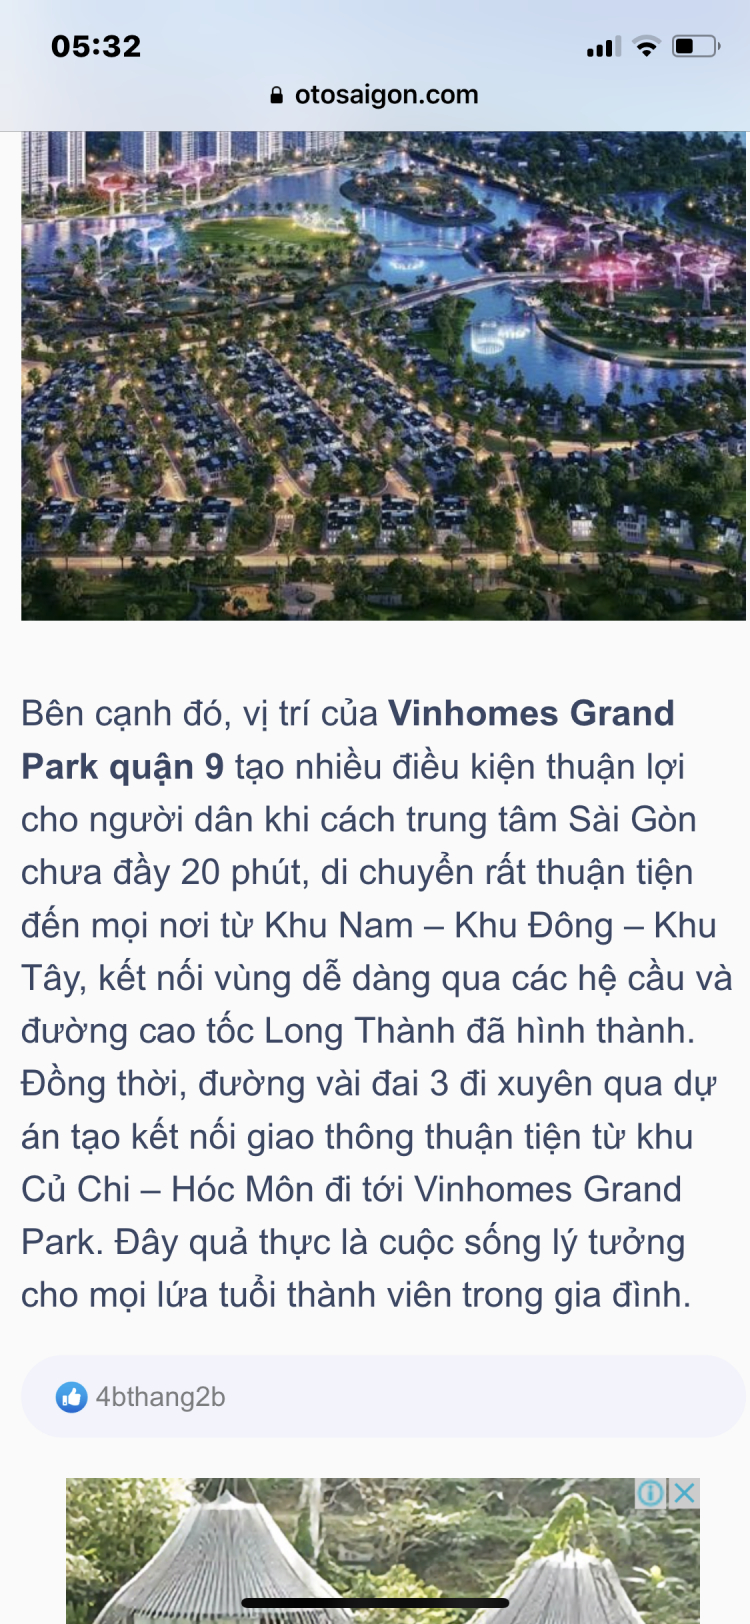 Những thông tin mới nhất về dự án Vinhomes Grand Park quận 9